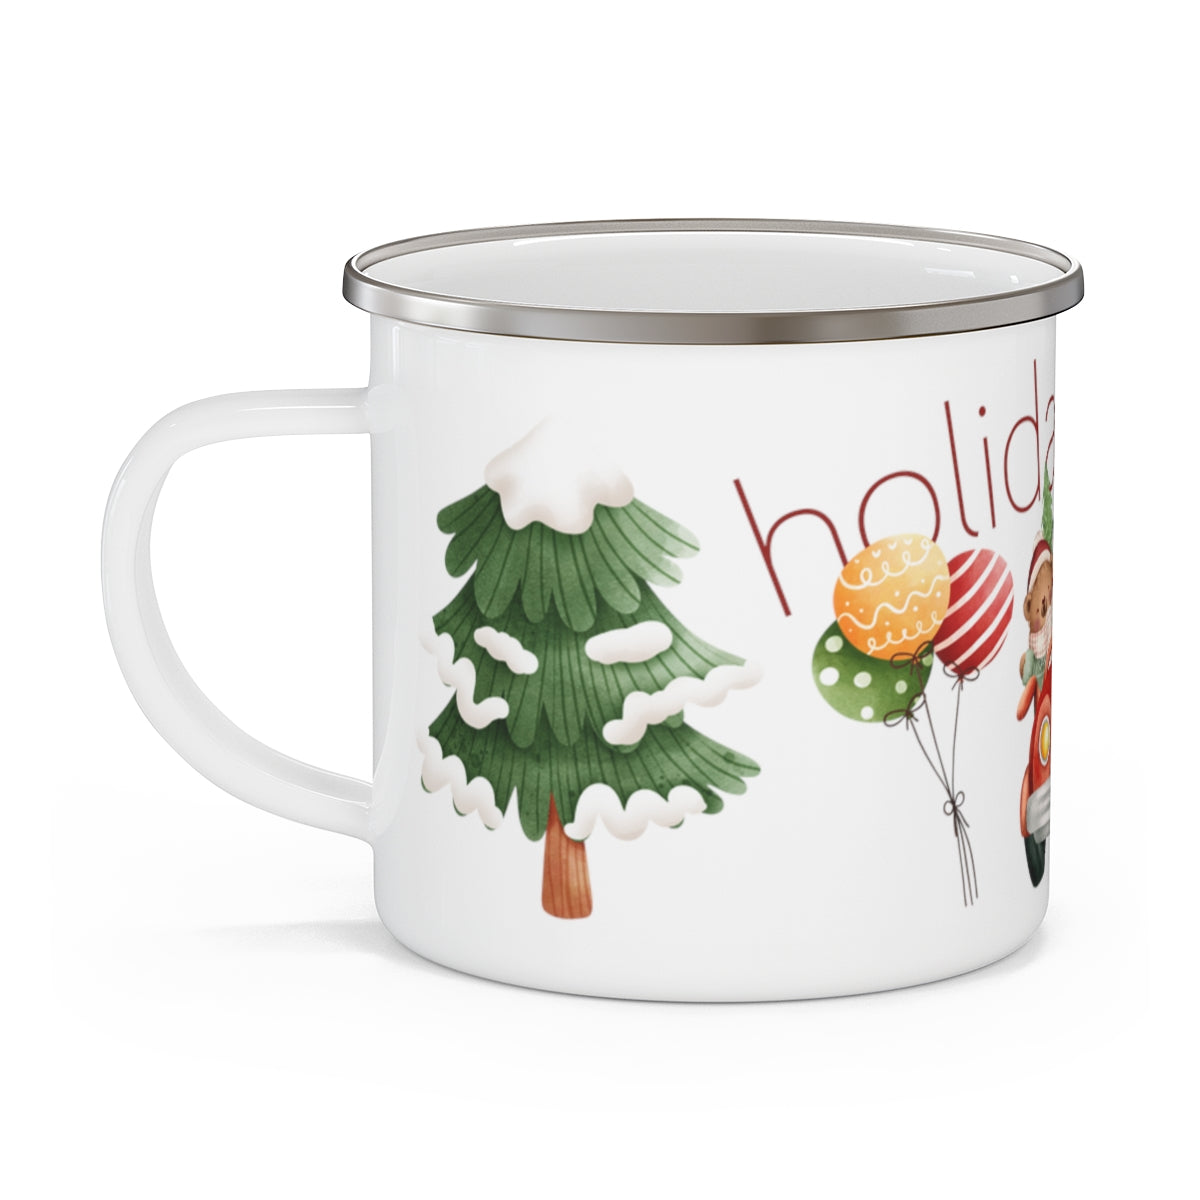 Holiday Time Enamel Mug